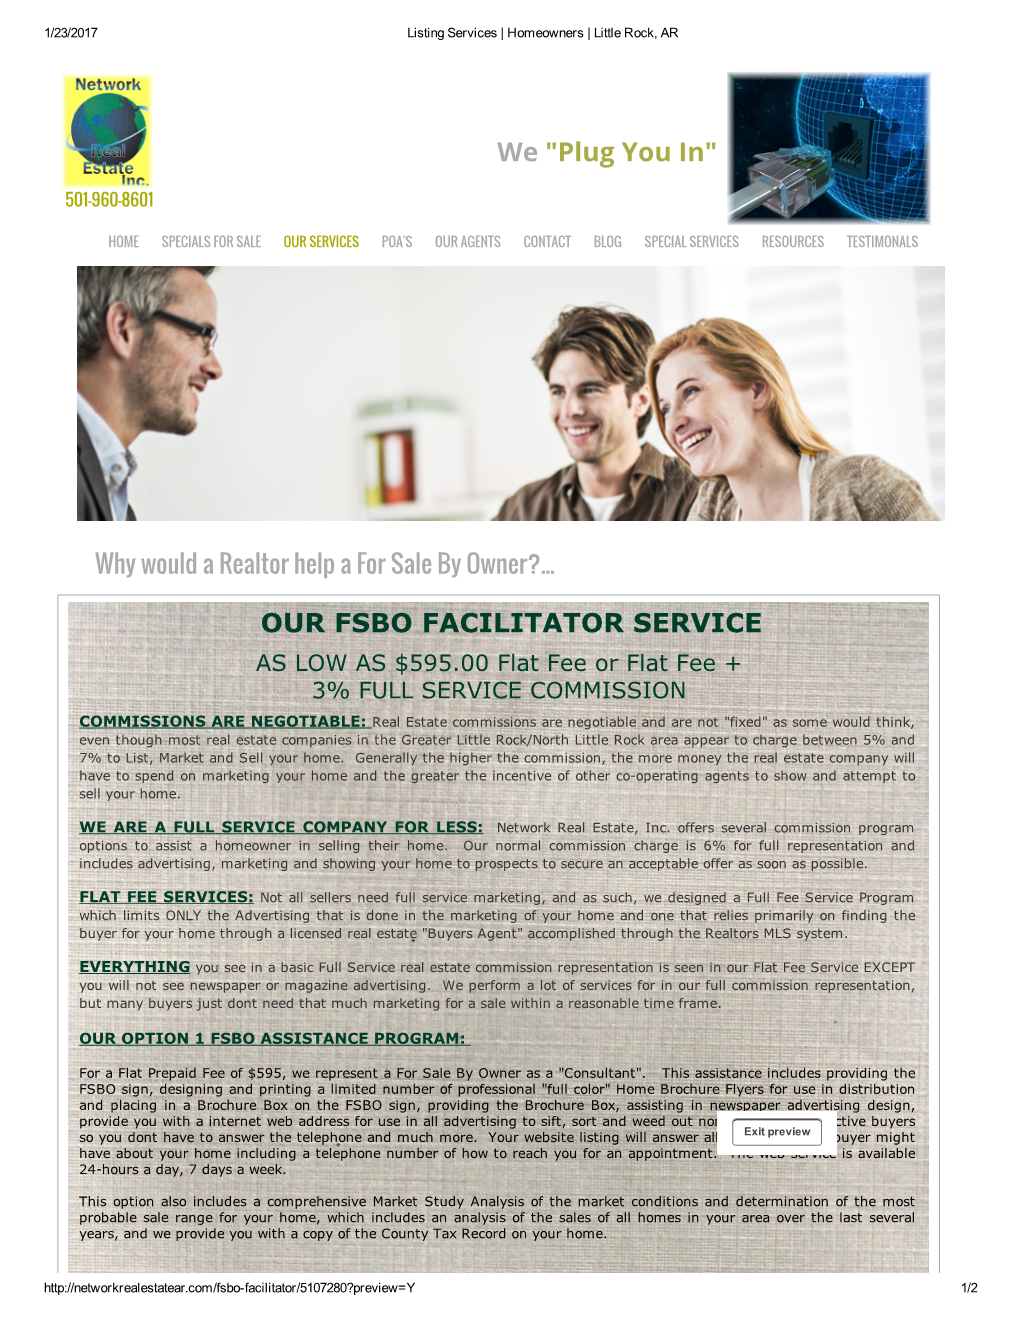 Our Fsbo Facilitator Service